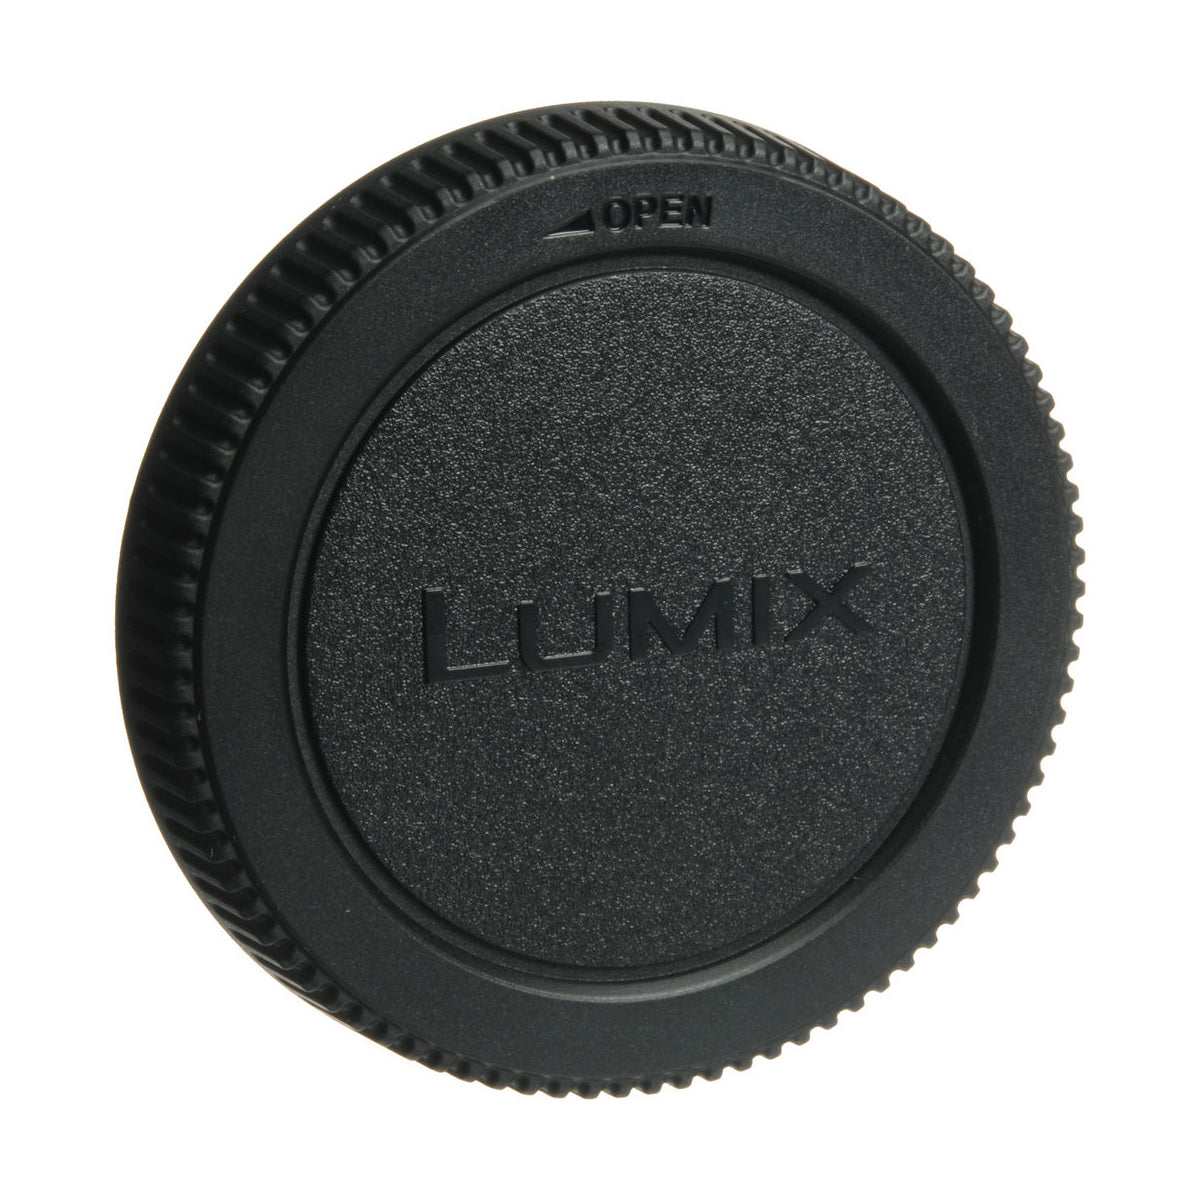 Panasonic Rear Lens Cap Single